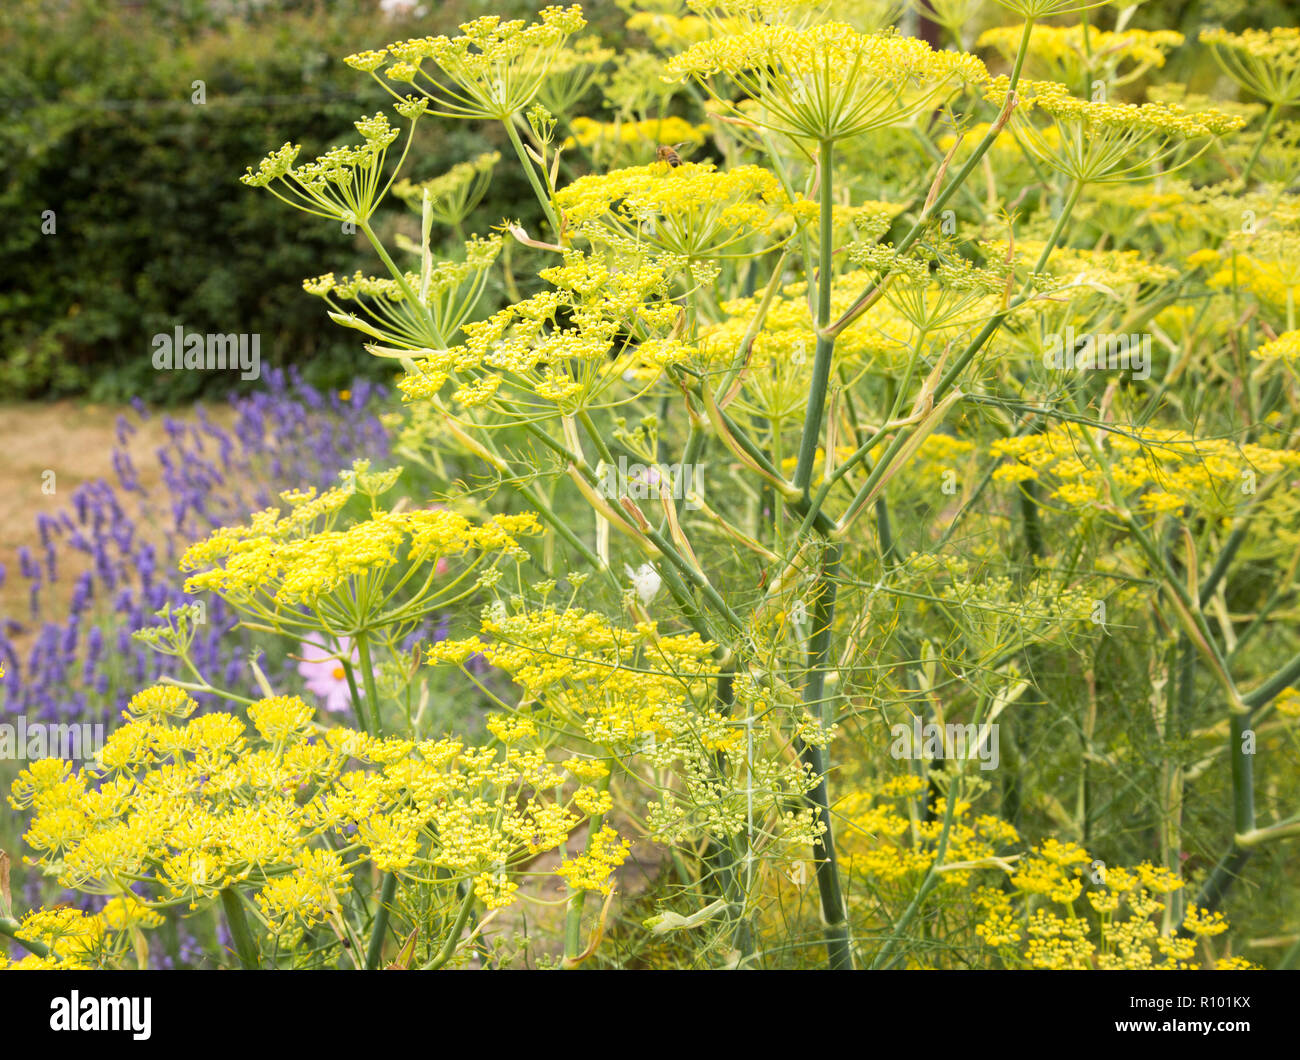 Gelb Fenchel Pflanze blüht im Garten, Suffolk, England, Großbritannien  Stockfotografie - Alamy